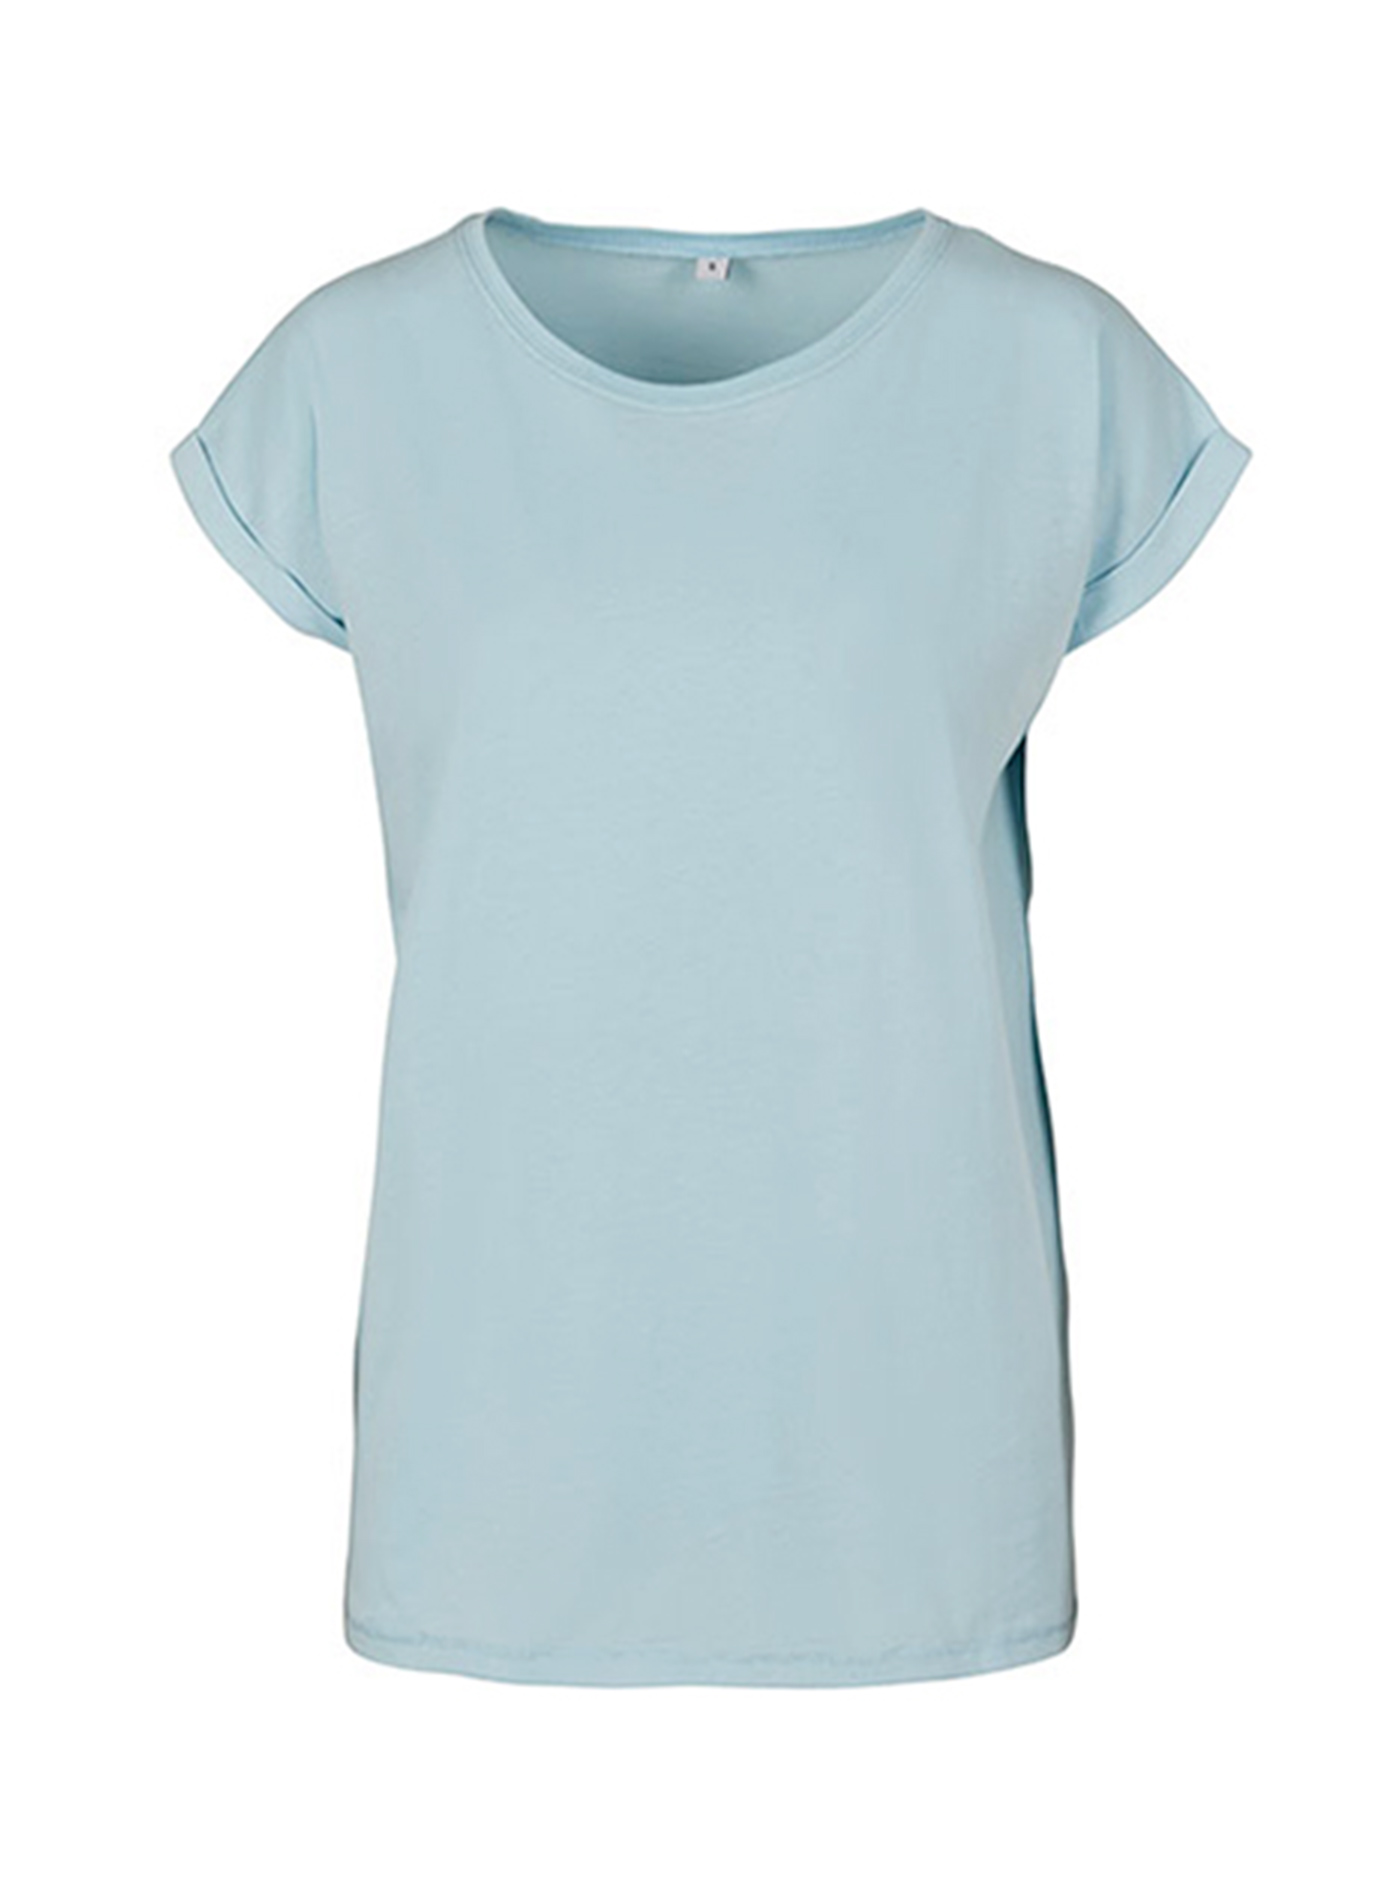 Dámské tričko Built your Brand Extended Shoulder - Blankytně modrá XL